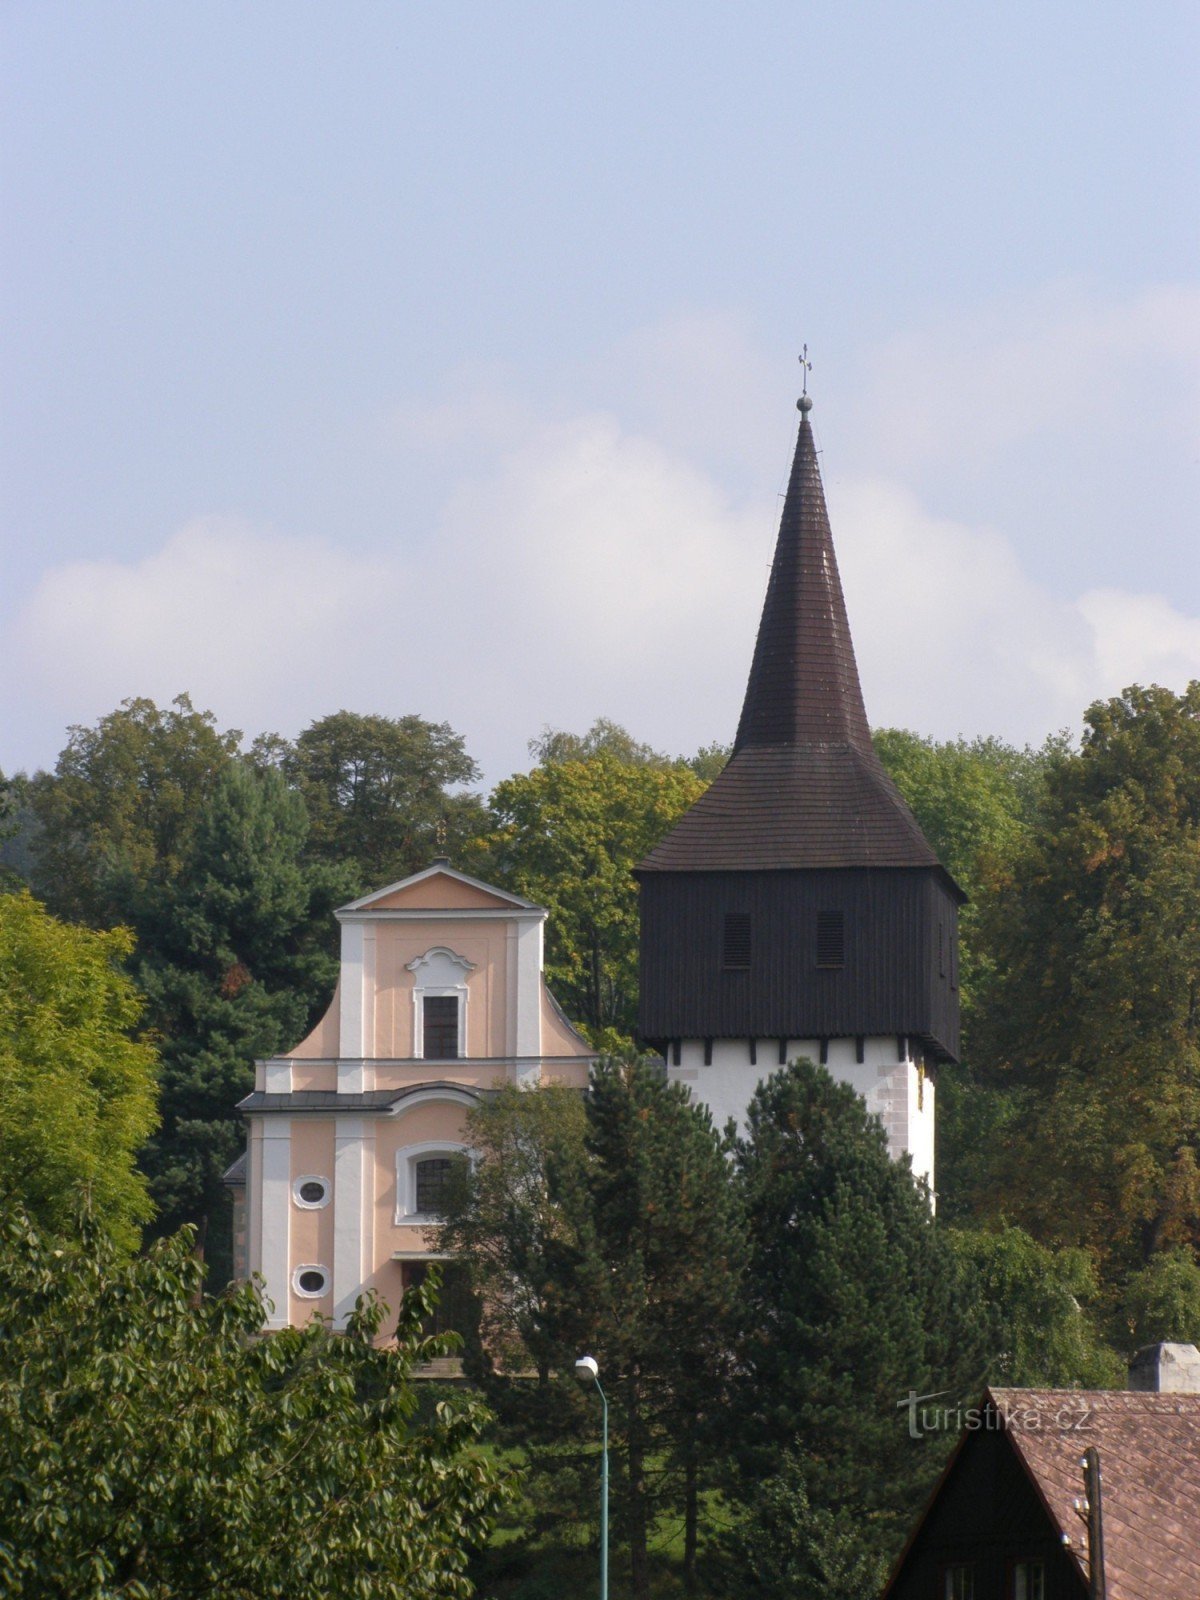 Hronov - Alla helgons kyrka med klocktorn